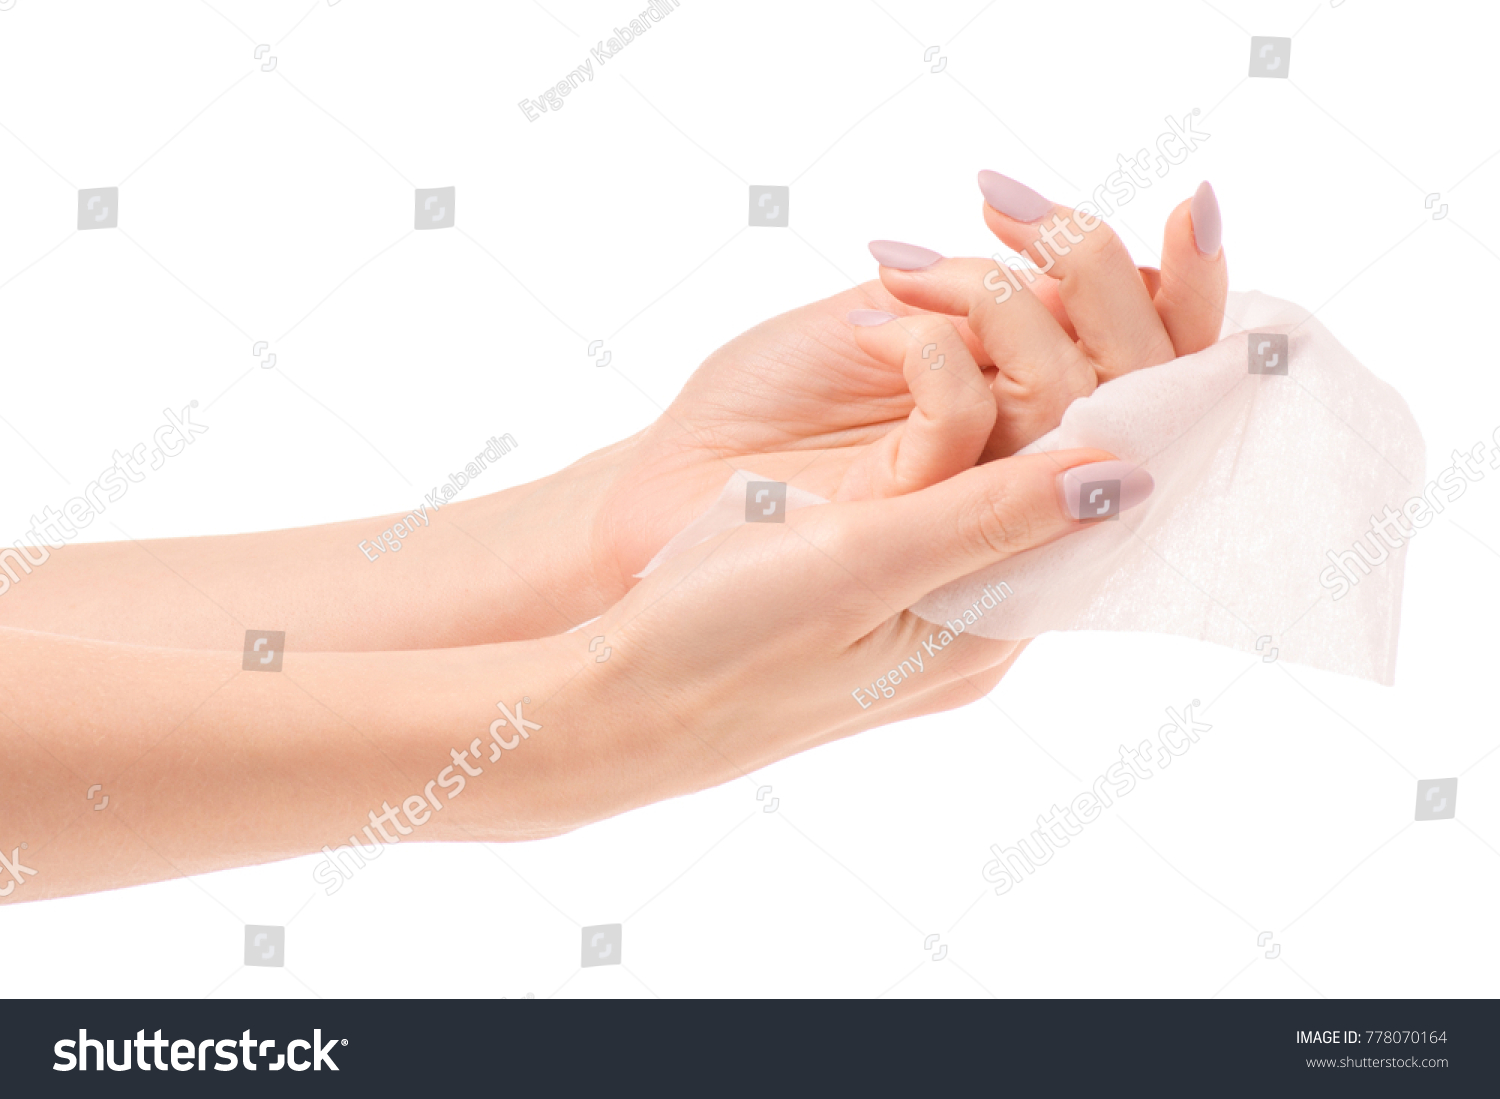 Female hand wet wipe on white background isolation #778070164